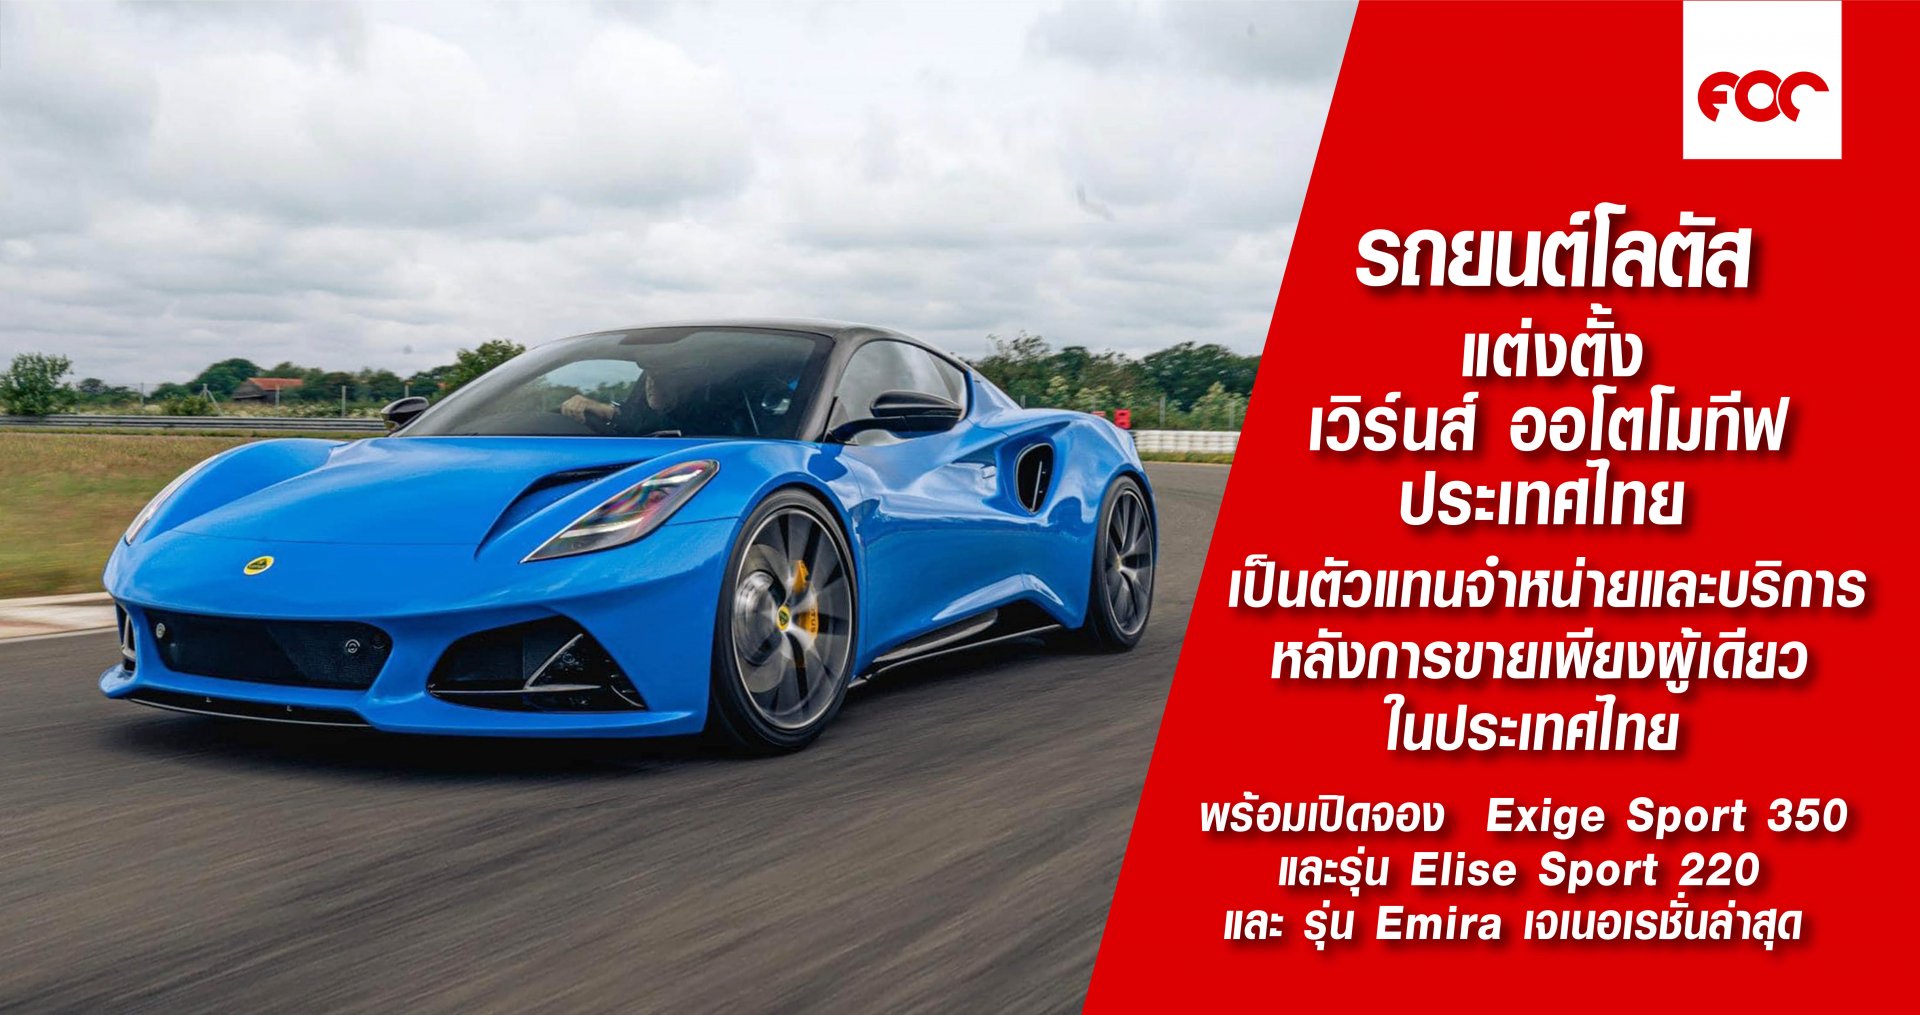 "รถยนต์โลตัส แต่งตั้ง เวิร์นส์ ออโตโมทีฟ ประเทศไทย  เป็นตัวแทนจำหน่ายและบริการหลังการขายเพียงผู้เดียวในประเทศไทย” 